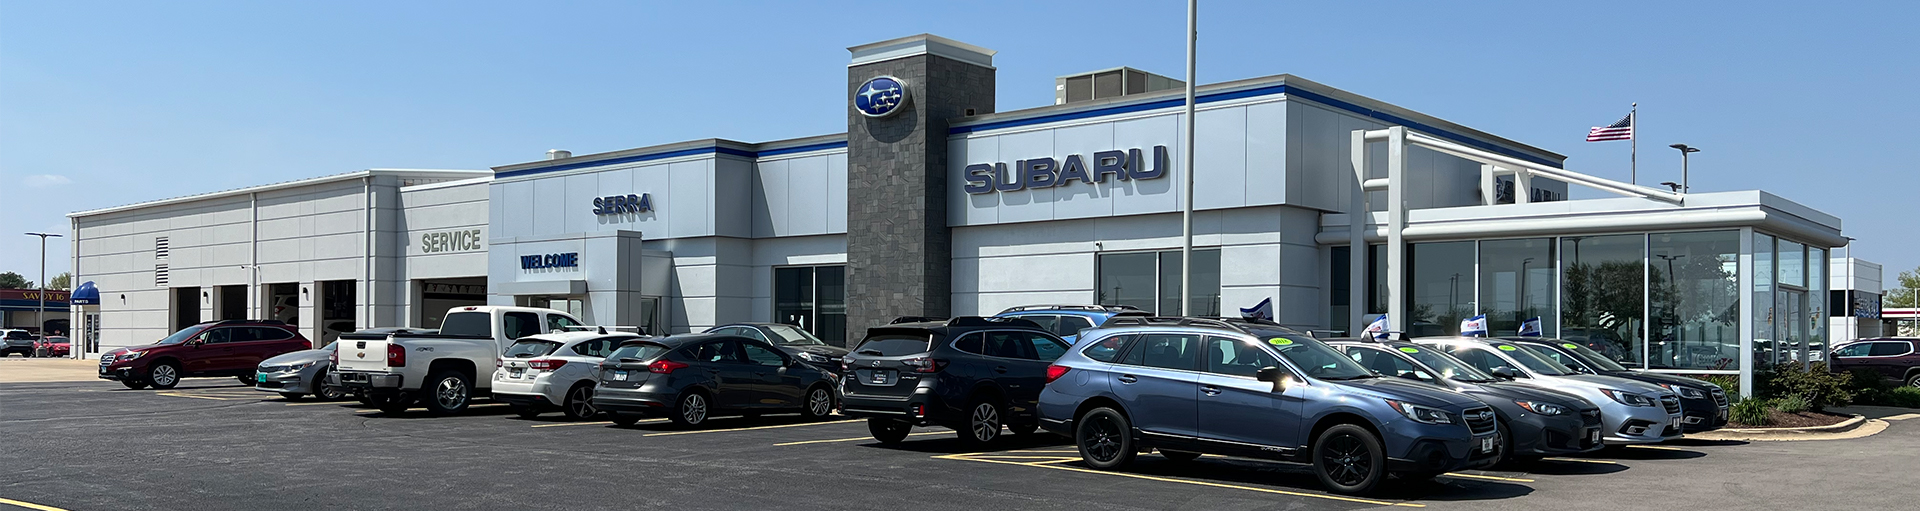 Subaru Fluids Services